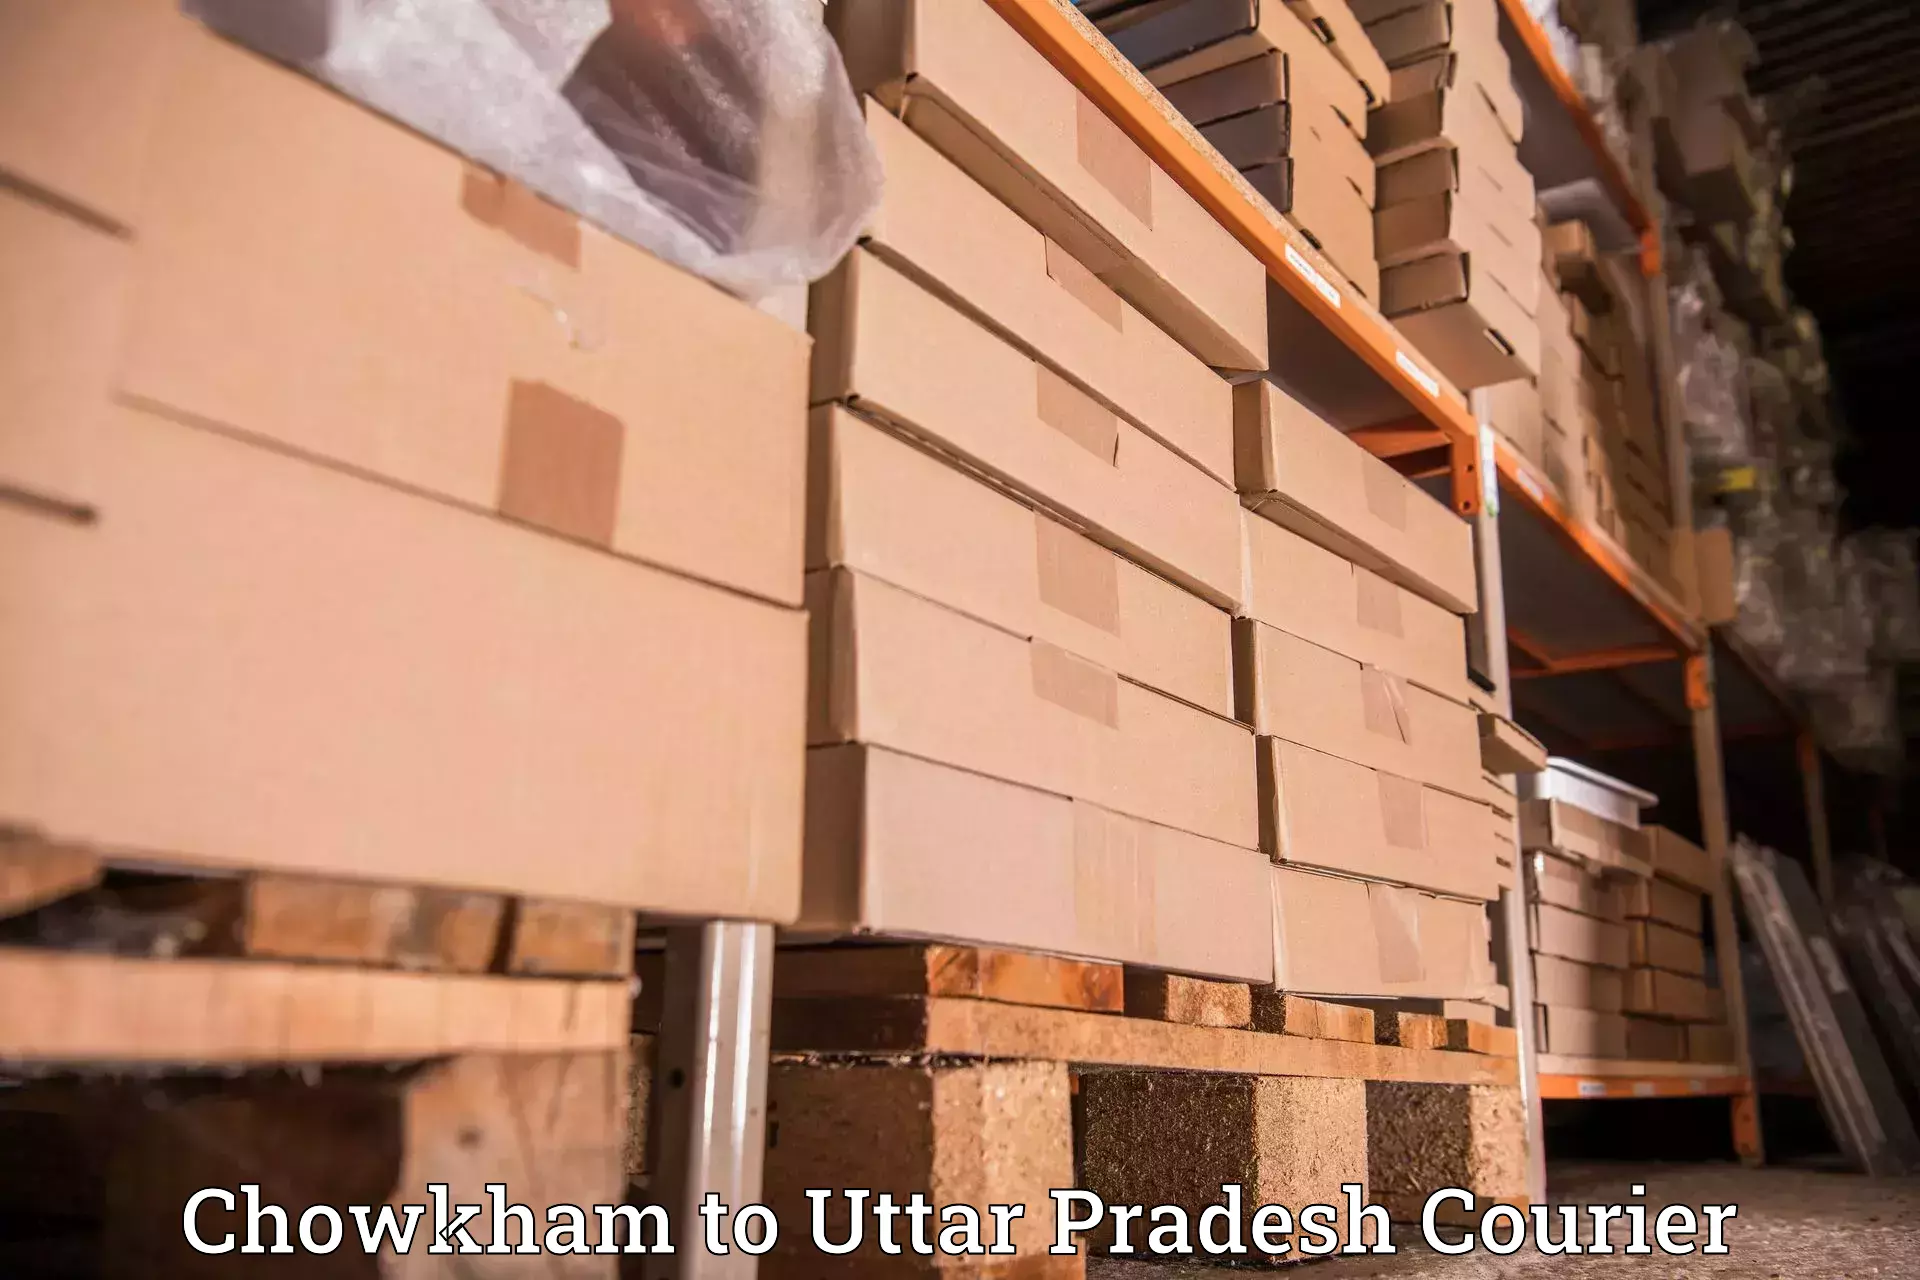 Expedited shipping methods Chowkham to Pilibhit